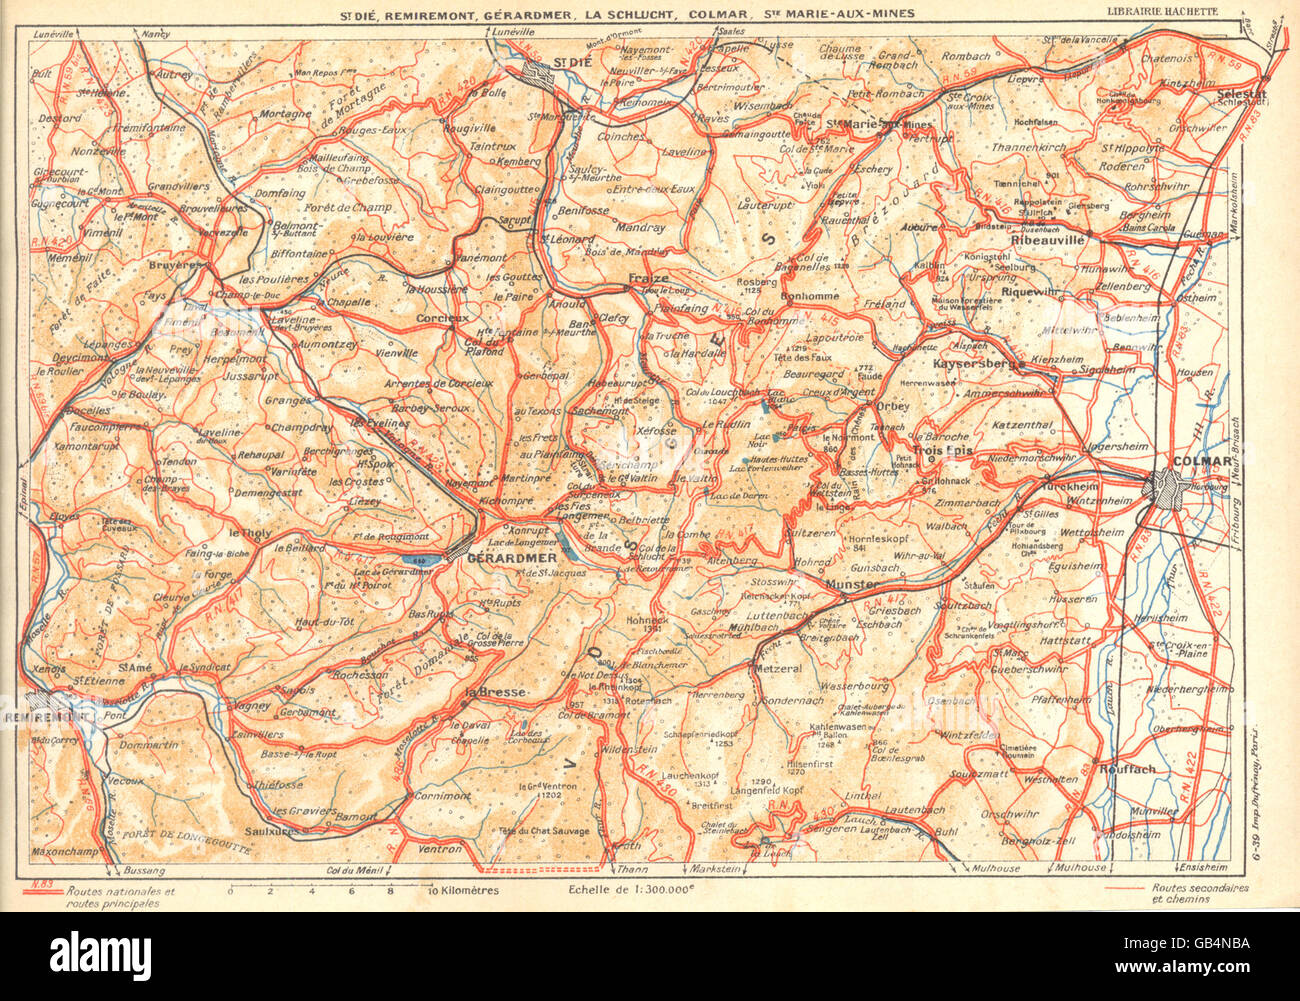 VOSGES:St.Dié,Remiremont,Gérardmer,Schlucht,Colmar,Ste Marie--mine, 1939 Mappa Foto Stock